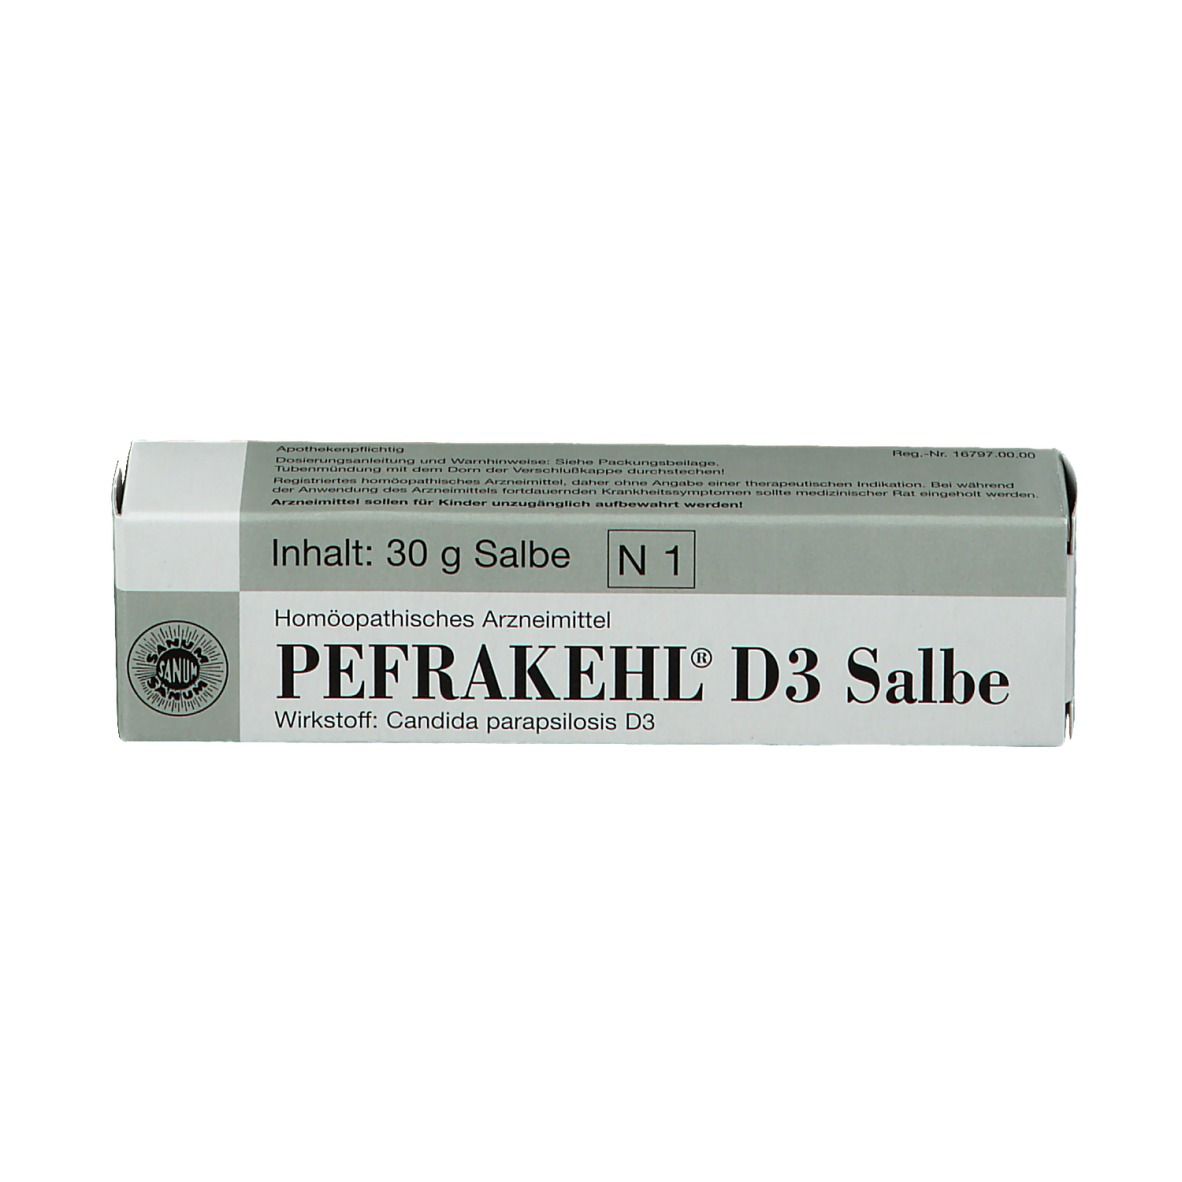 Pefrakehl® D3 Salbe